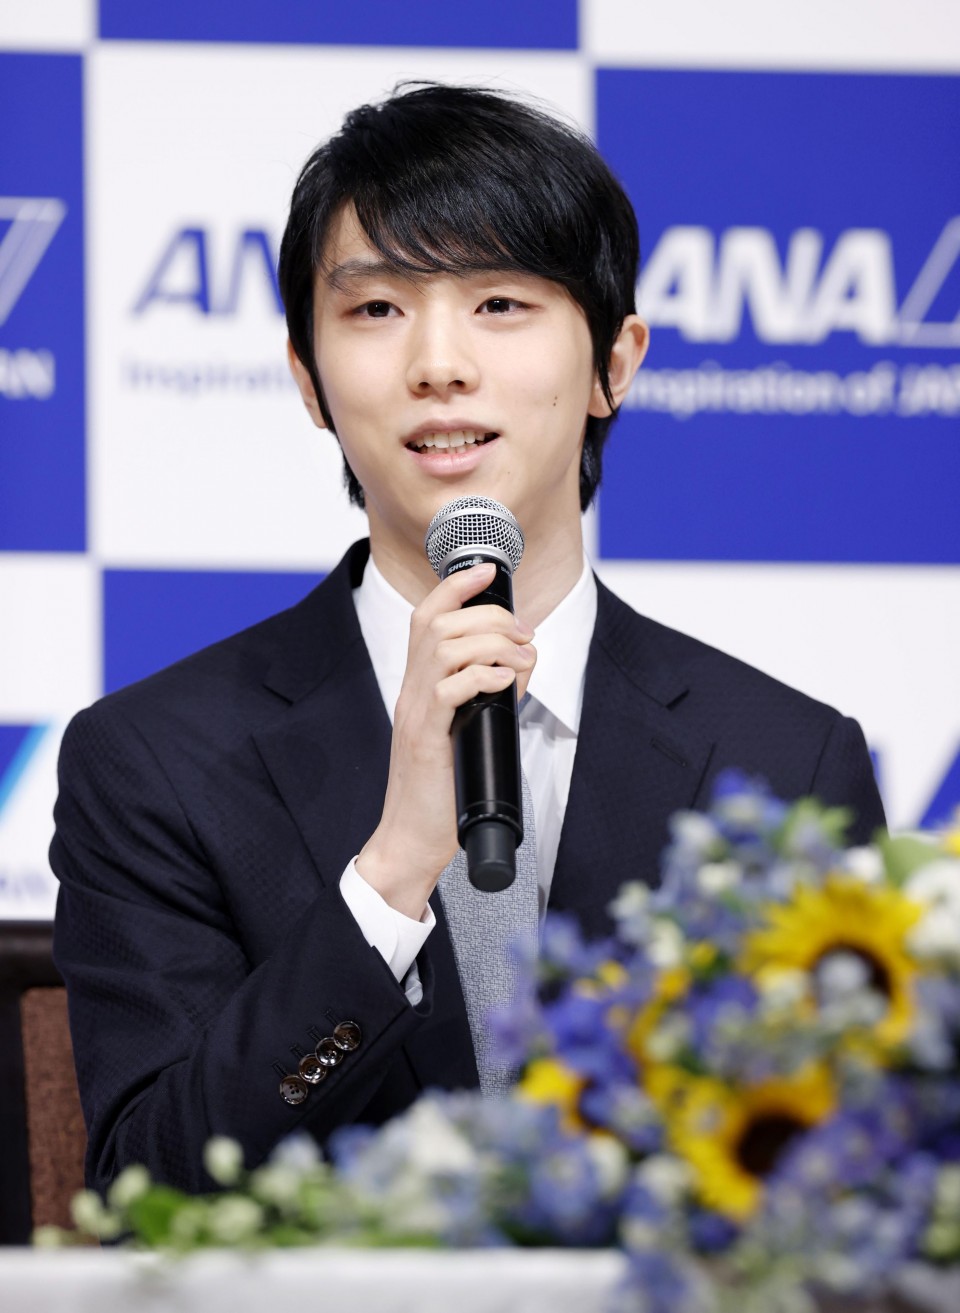 "Hoàng tử sân băng" Yuzuru Hanyu chính thức giải nghệ sau 12 năm, tuyên bố ở họp báo gây chấn động châu Á